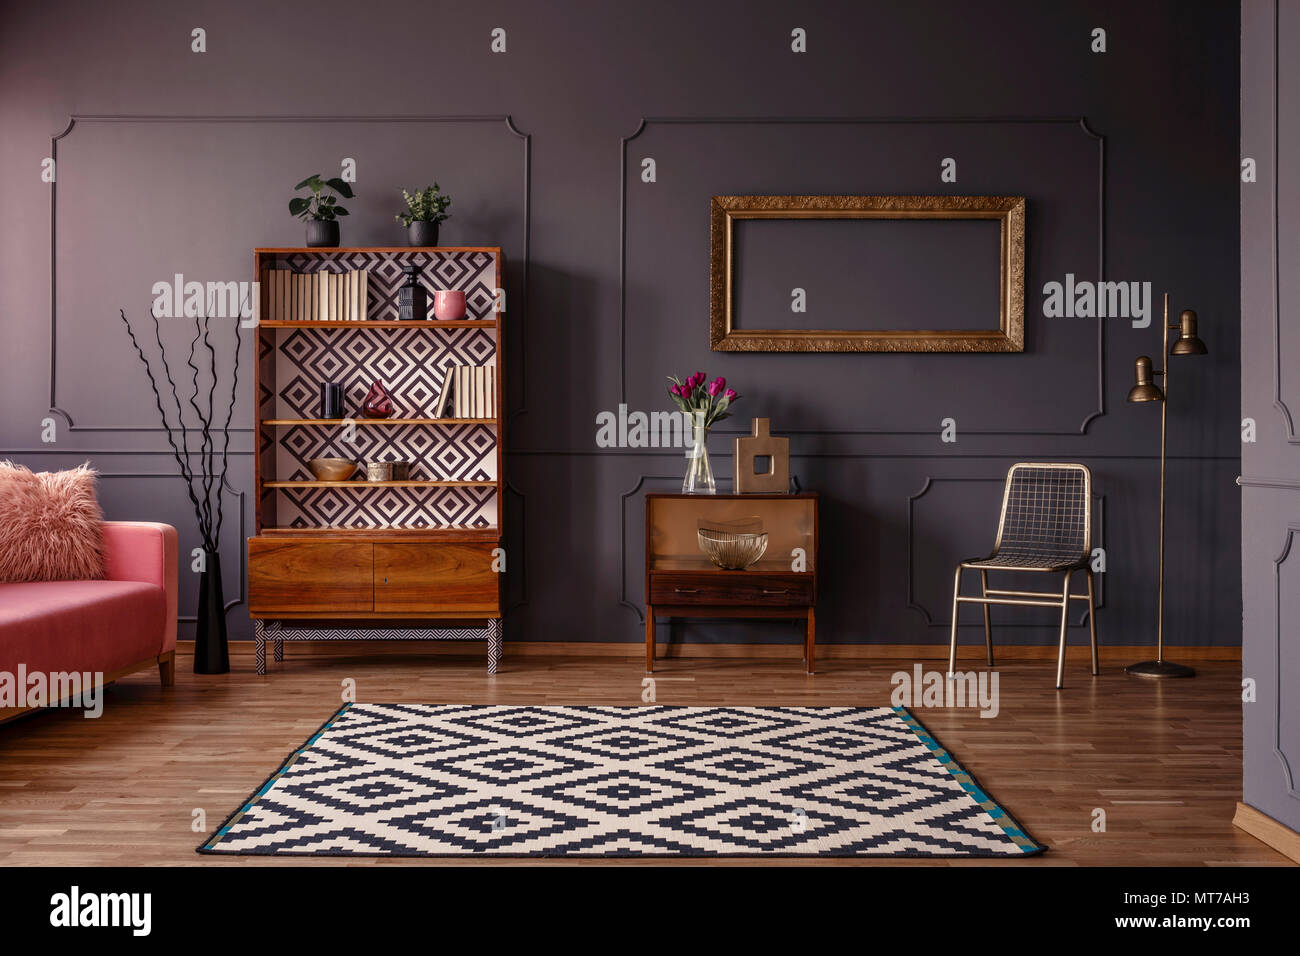 Vintage salotto interno con un tappeto a motivi geometrici, credenza, cornice dorata sulla parete, sedia e stampaggio a parete Foto Stock